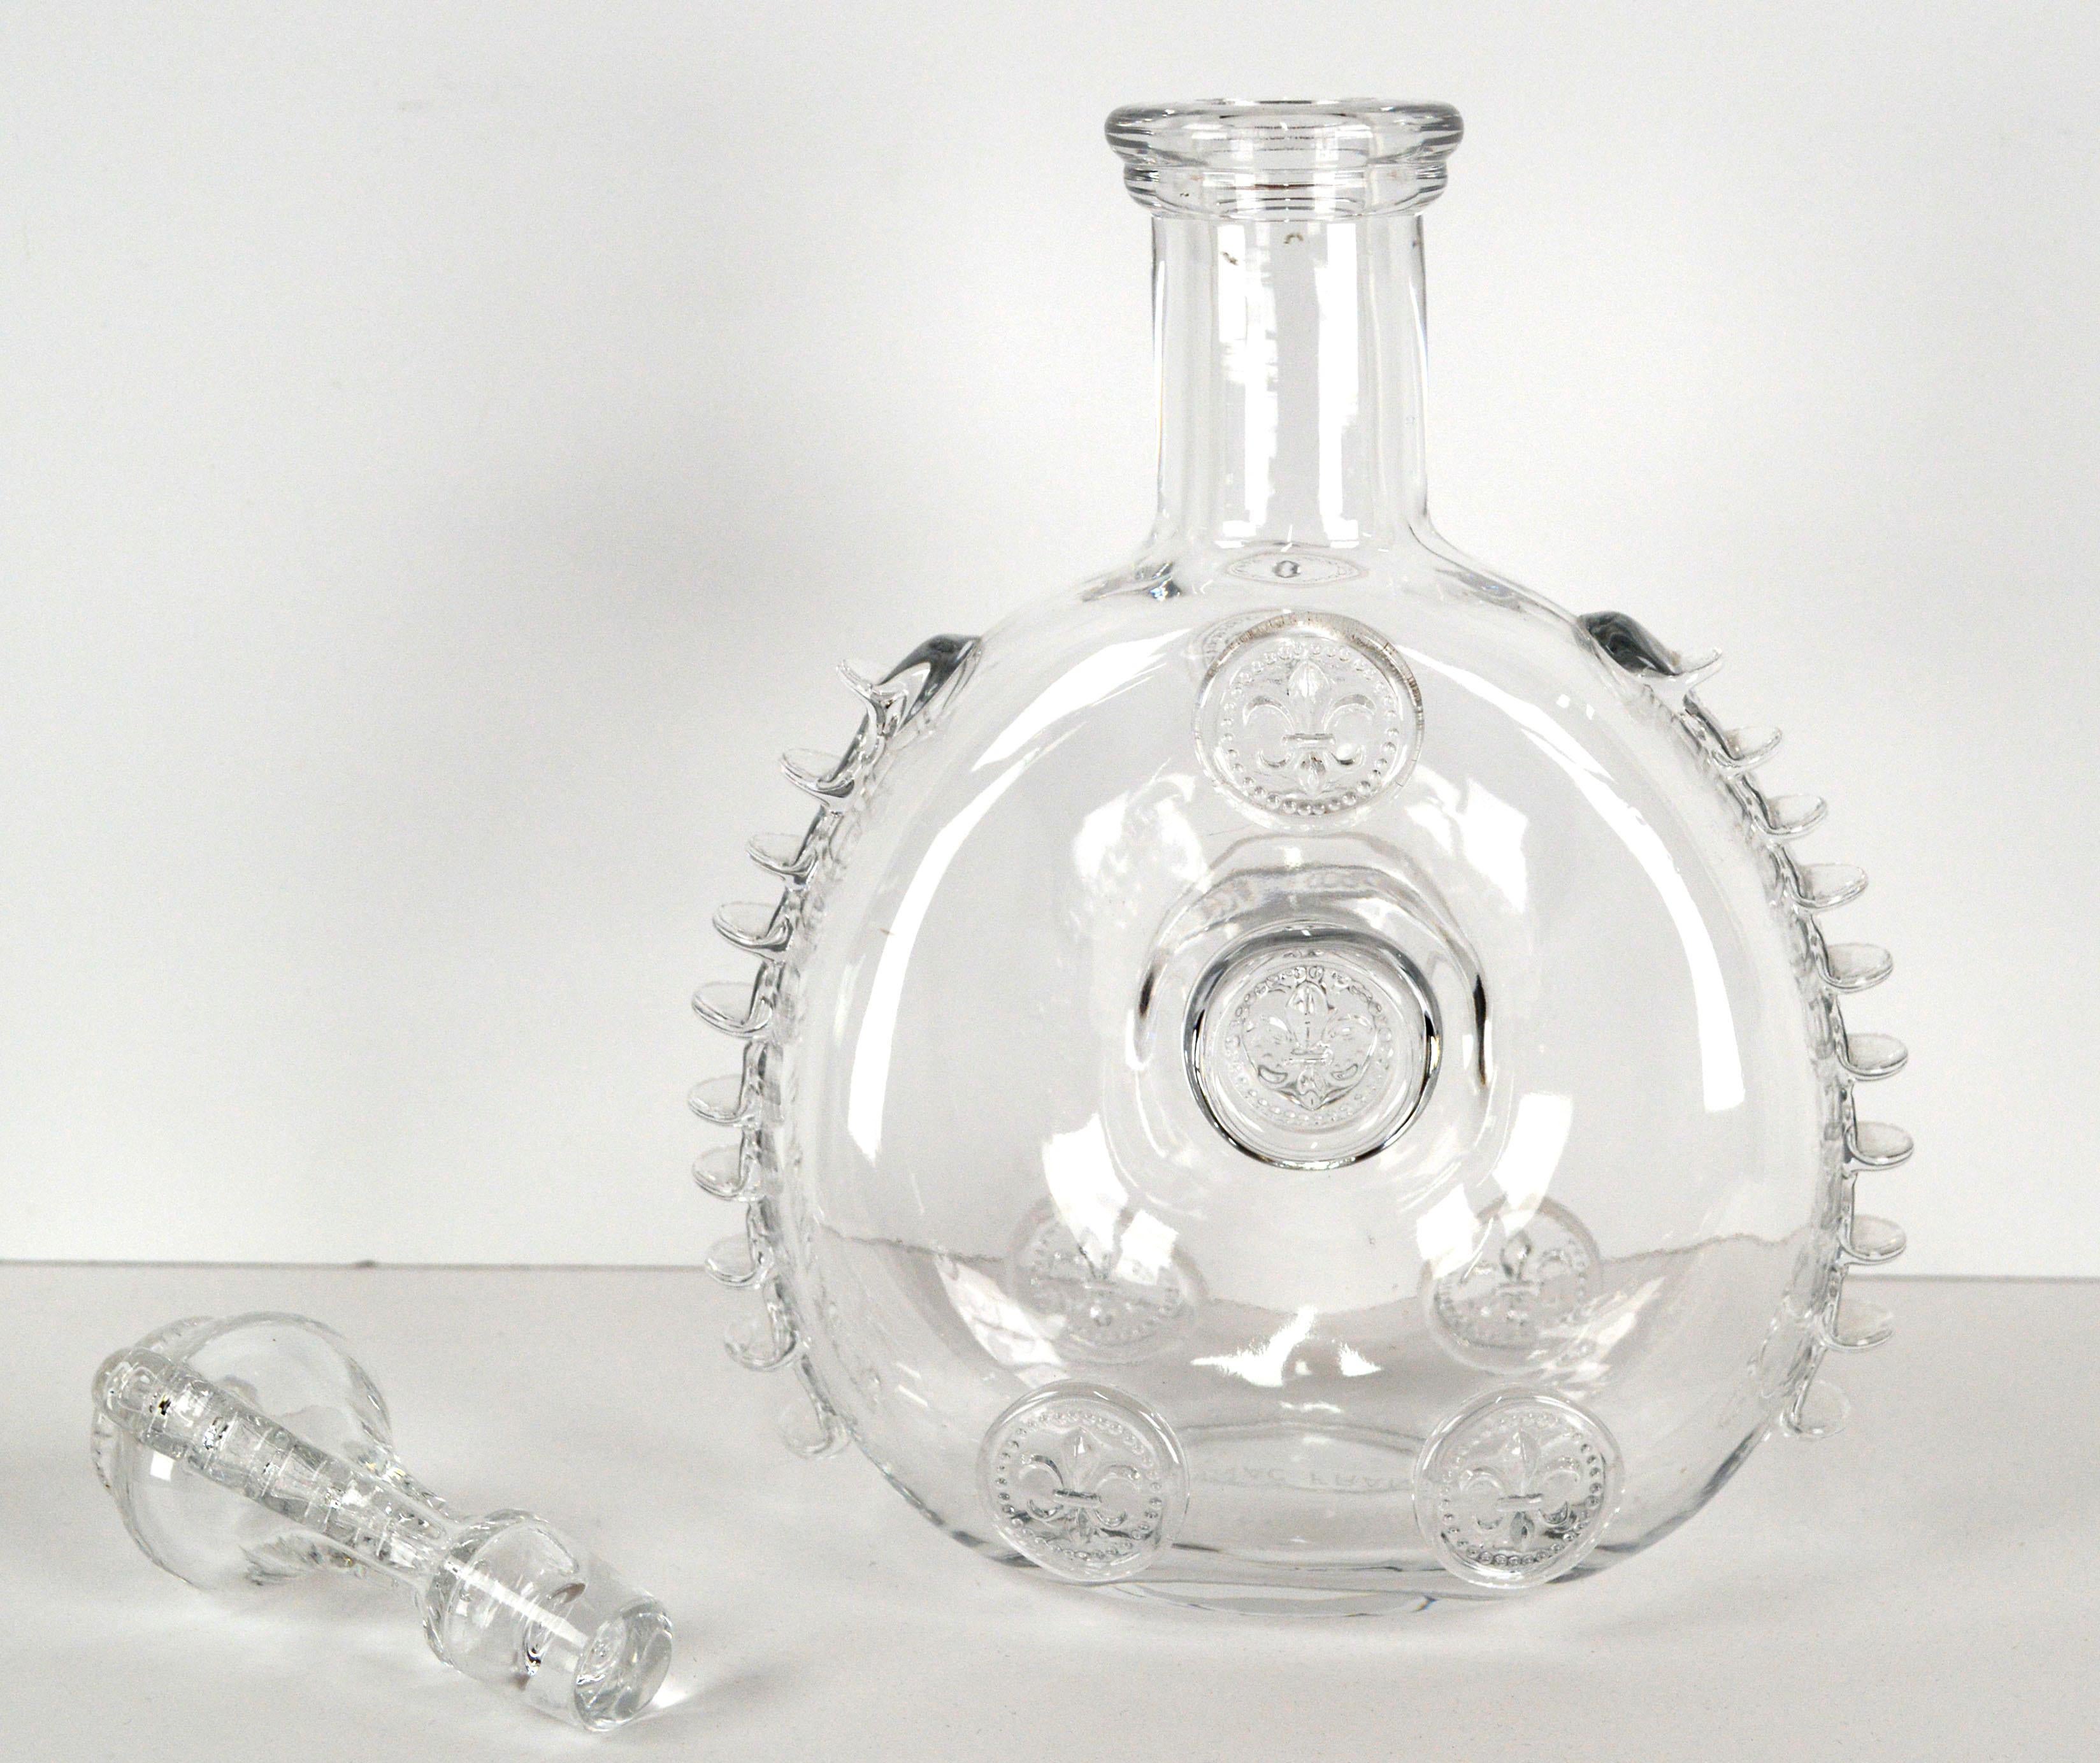 Élégante carafe à cognac en cristal Remy Martin Baccarat avec bouchon assorti, du fabricant de cristal fin Baccarat (français, fondé en 1764). Le bouchon orné et les détails raffinés des épines nervurées de chaque côté font de cette carafe unique